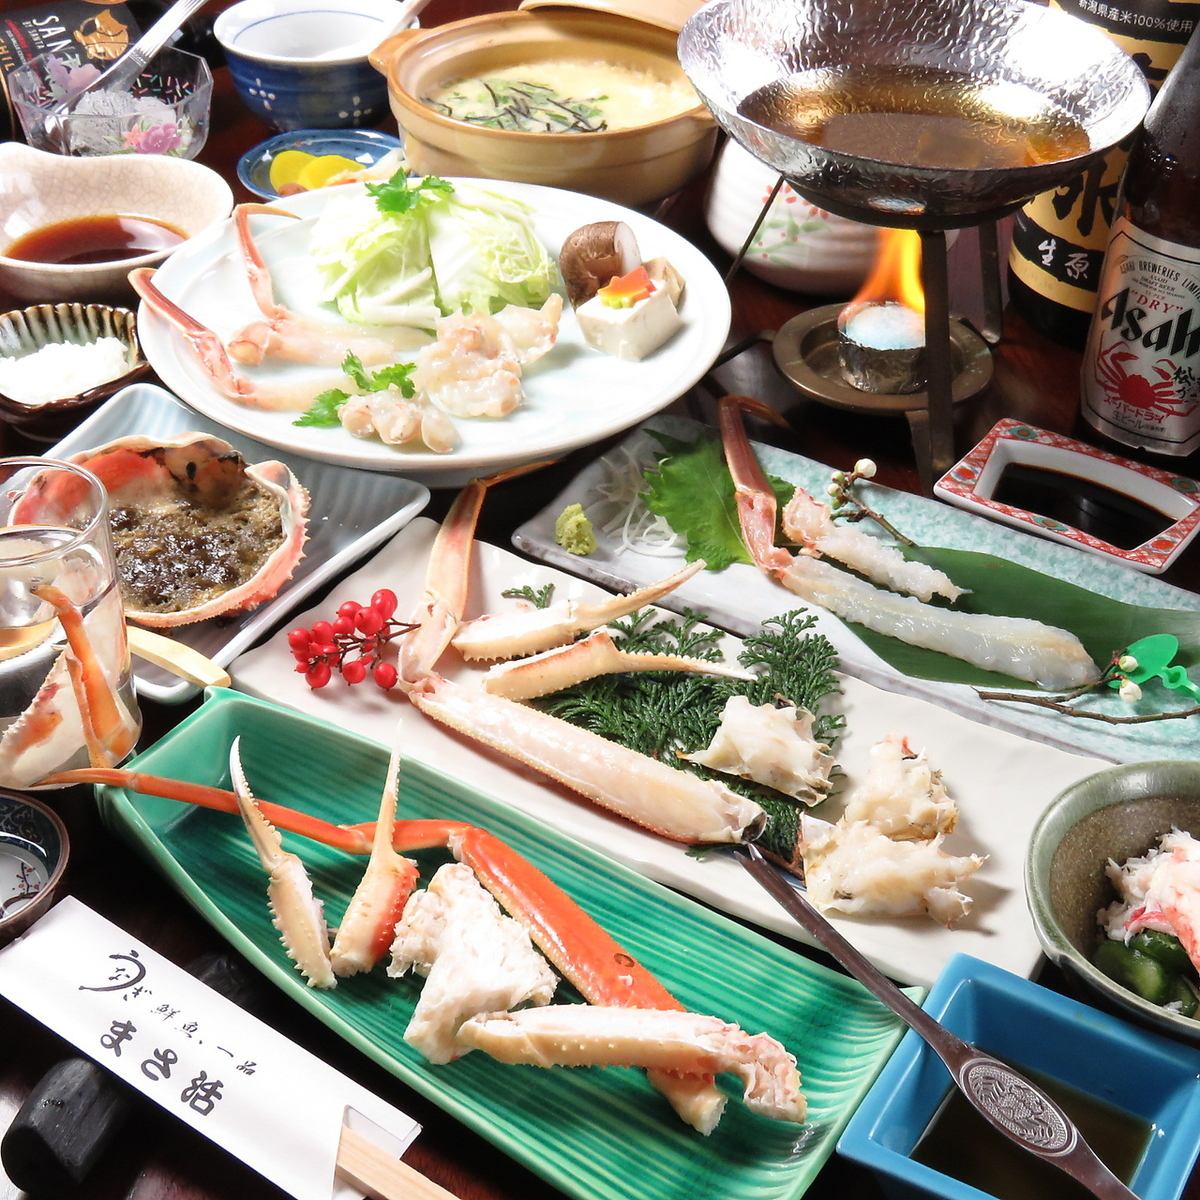 我們提供最優質的螃蟹和新鮮海鮮套餐！請盡情享受！